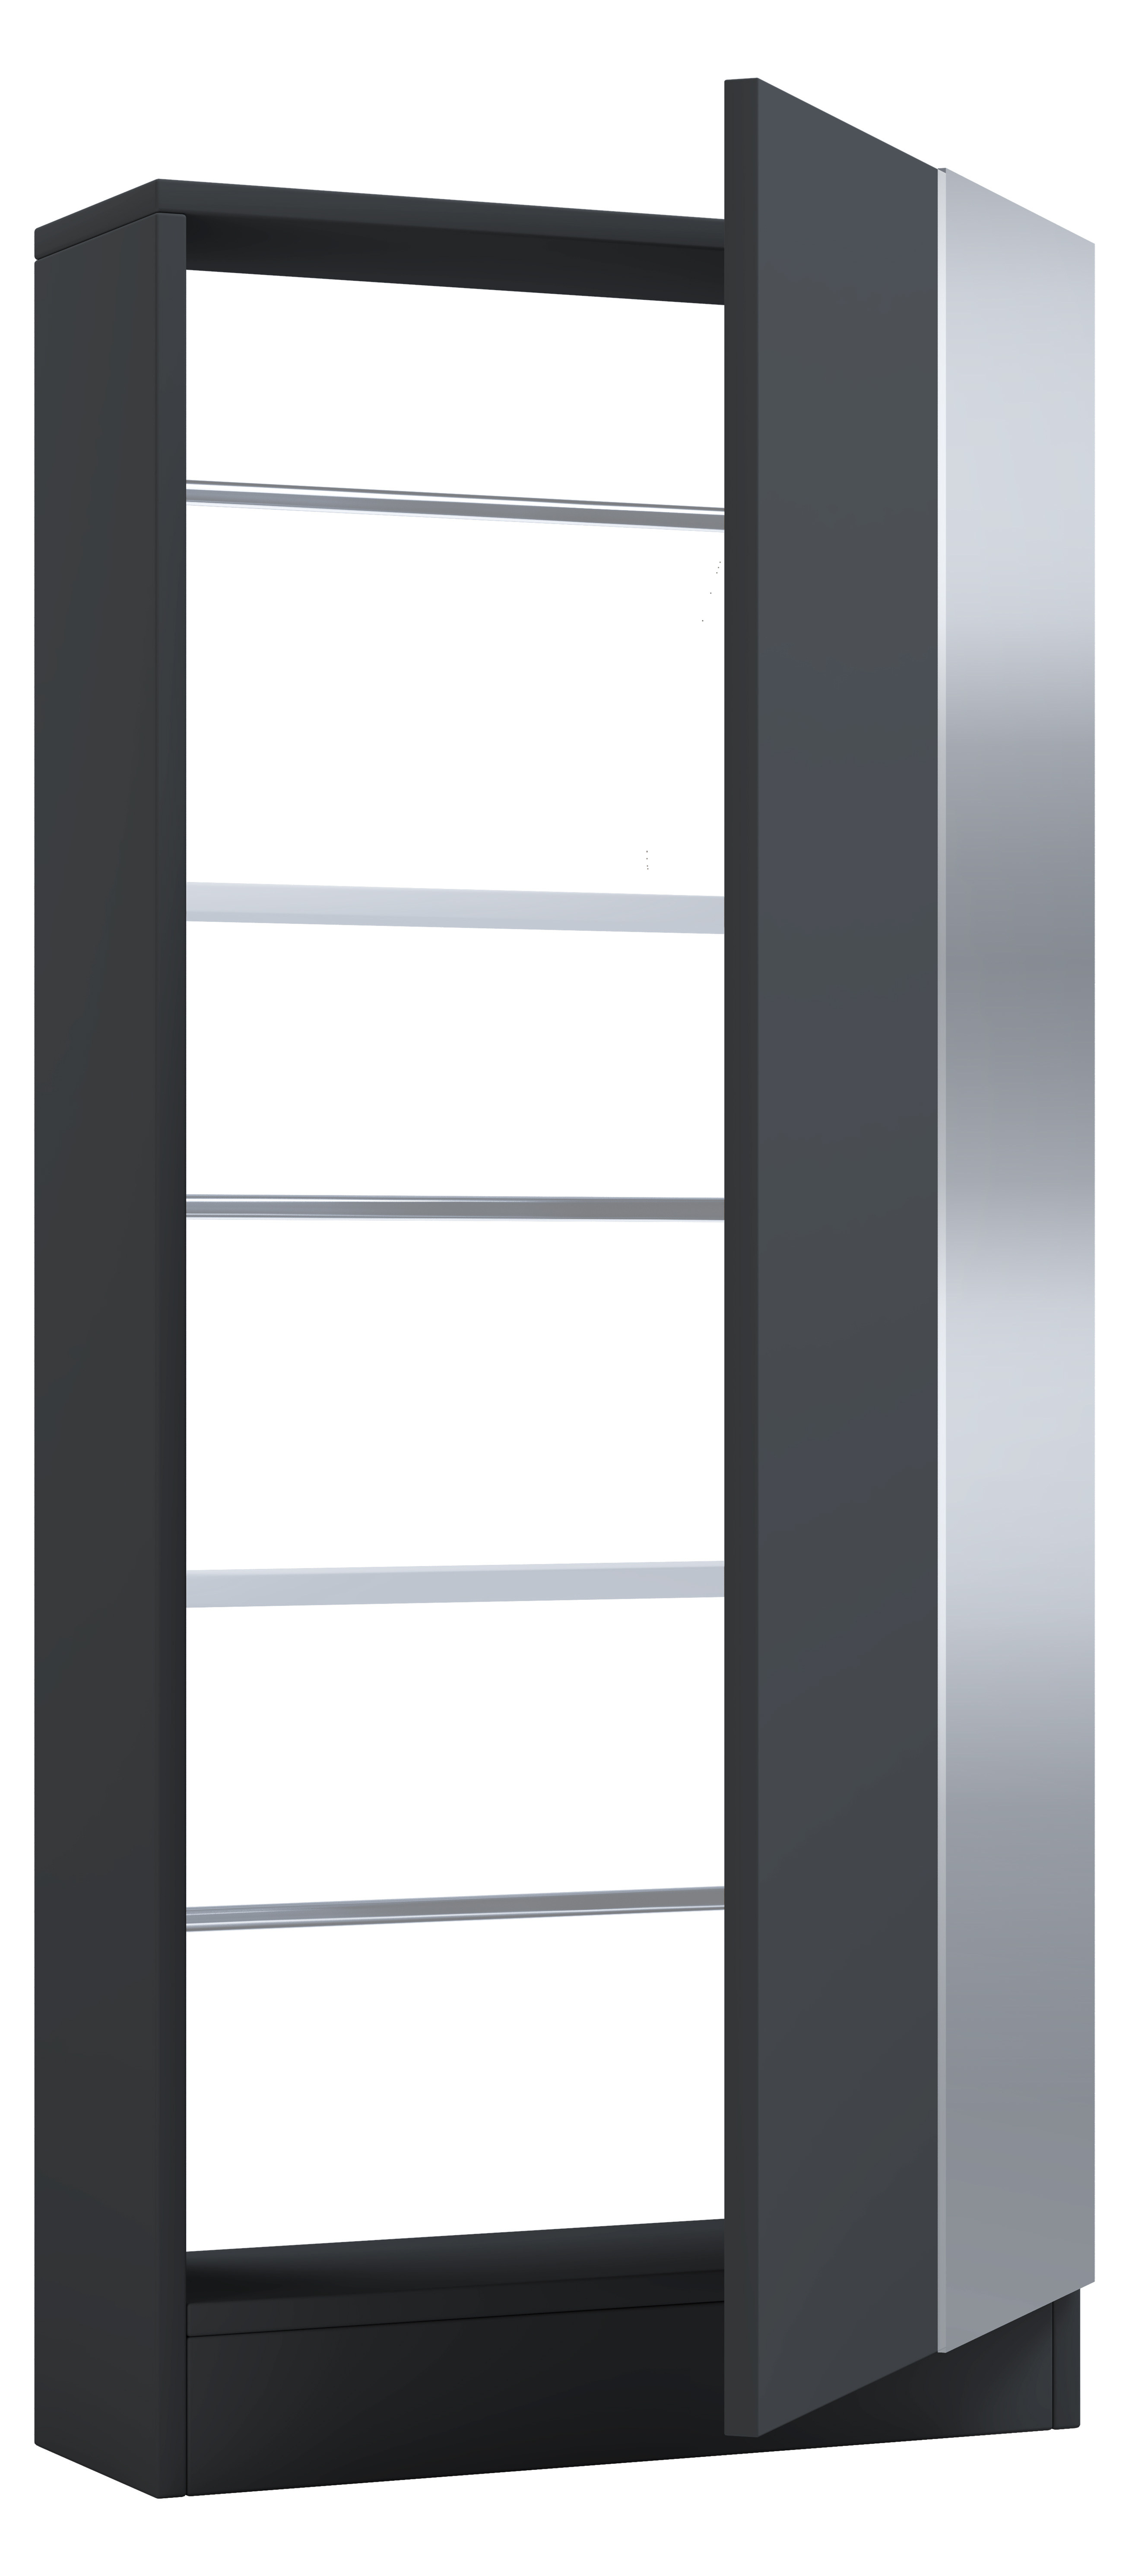 VCM NORDIC Fulisa skoskåp, m. spegel på dörr, 2 hyllplan - antracitgrått trä